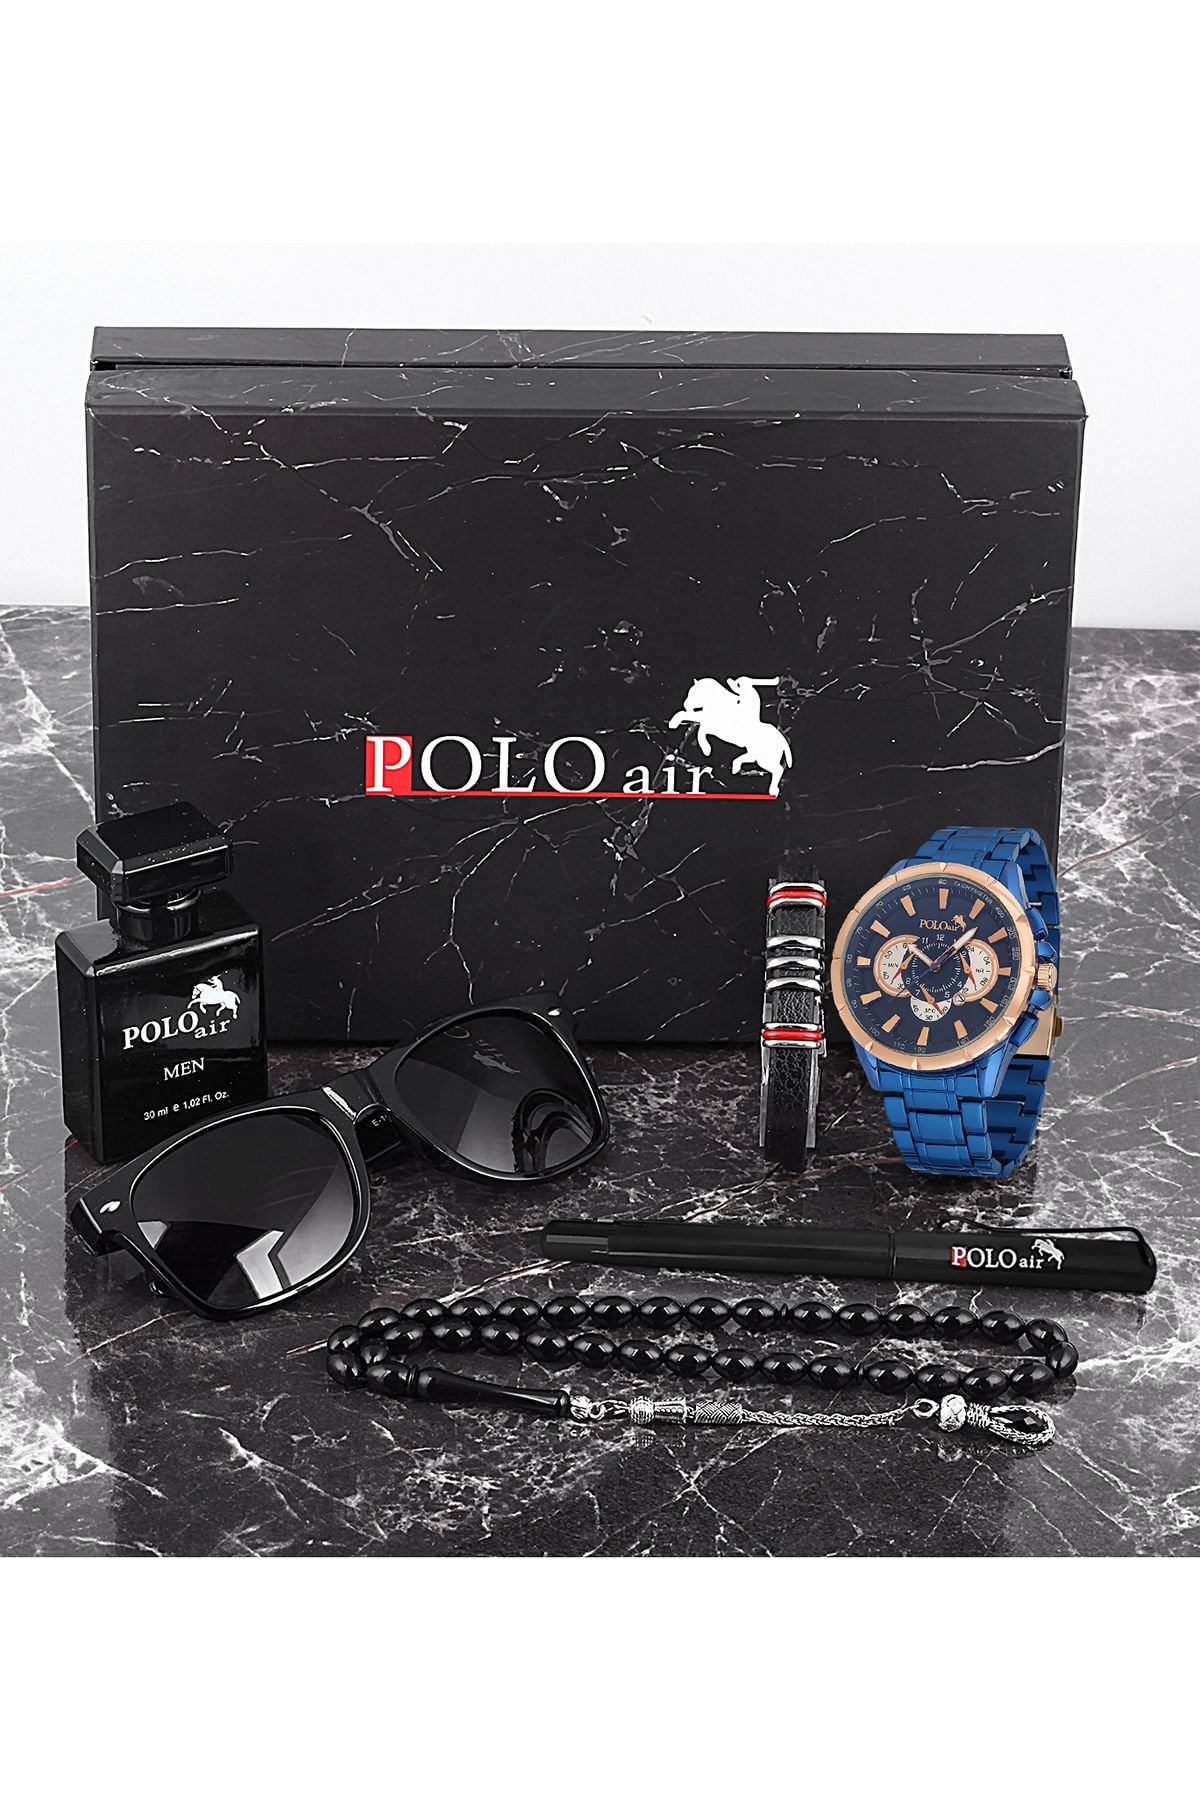 polo air Erkek Set Takvim Özellikli Saat Gözlük Parfüm Tesbih Kalem Bileklik Özel Kutulu Siyah Renk